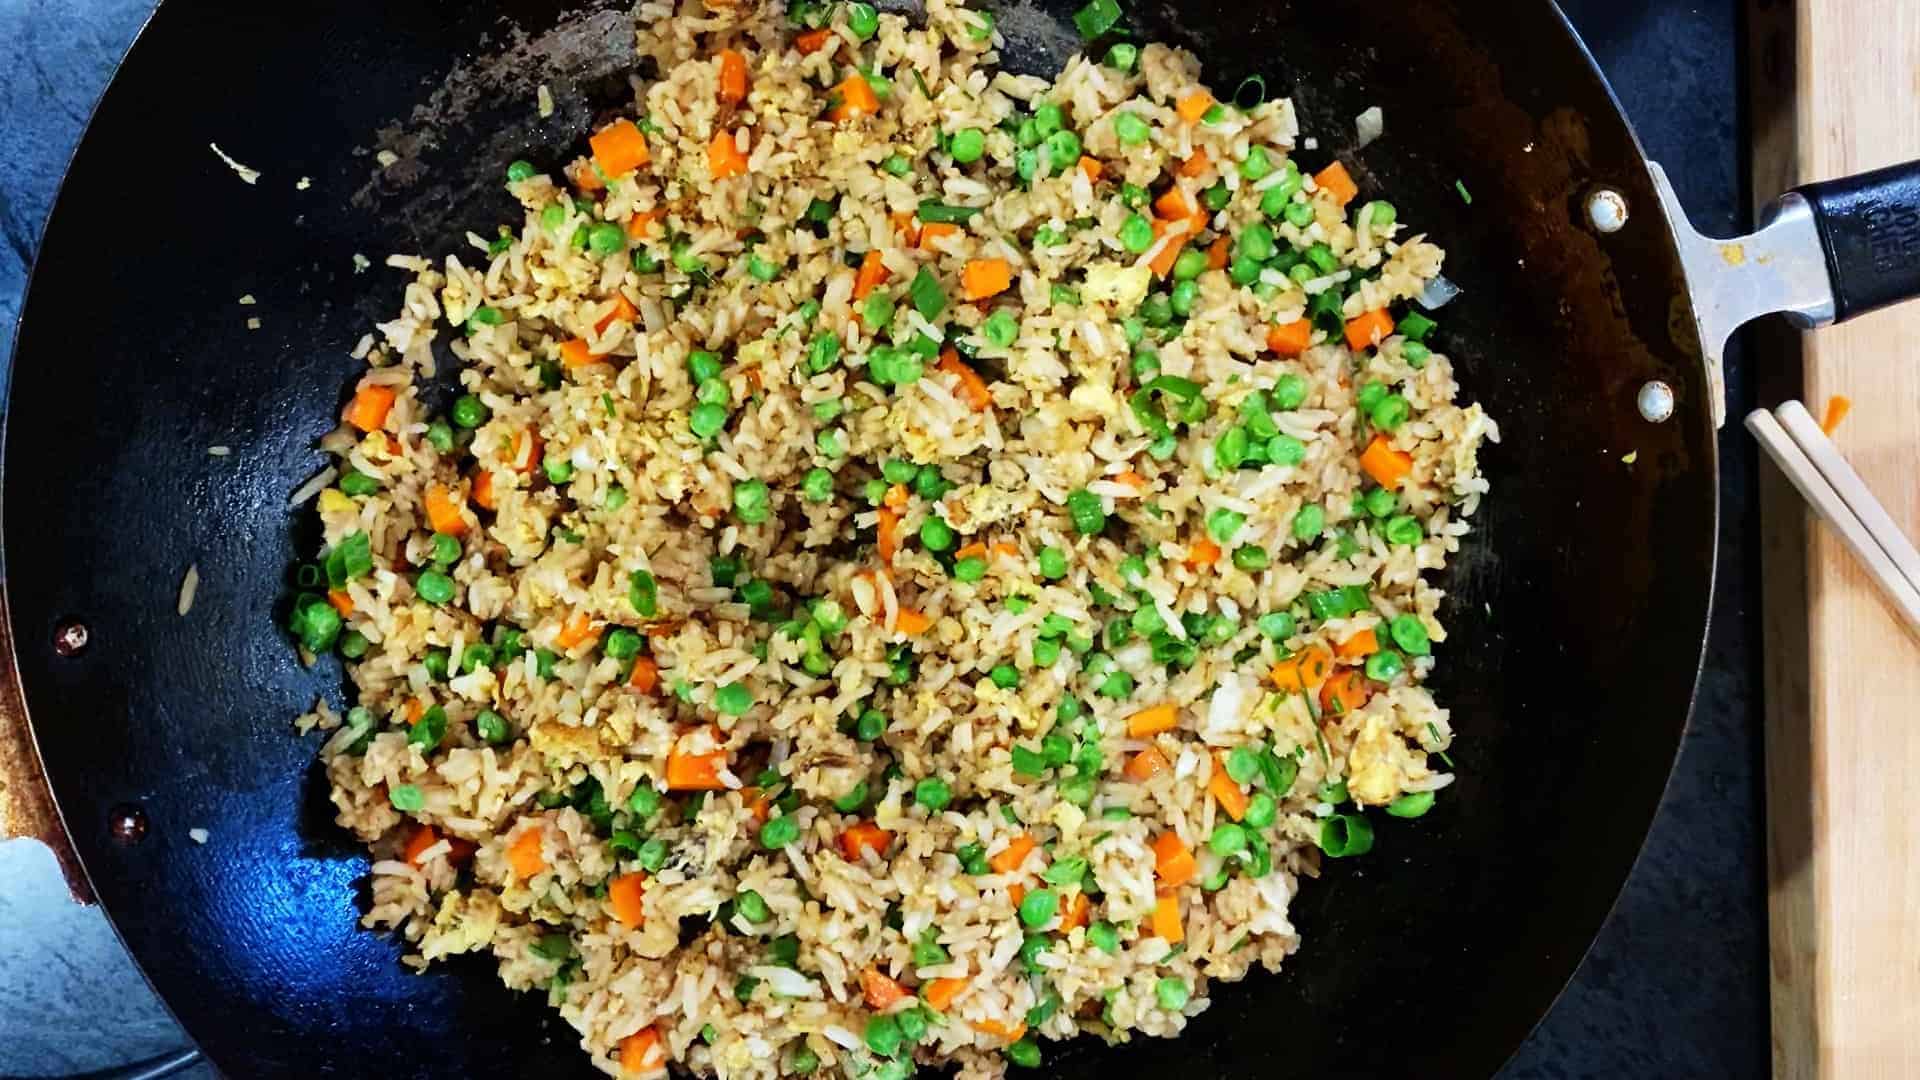 vegetable fried rice recipe in a wok. recipe by foodology geek